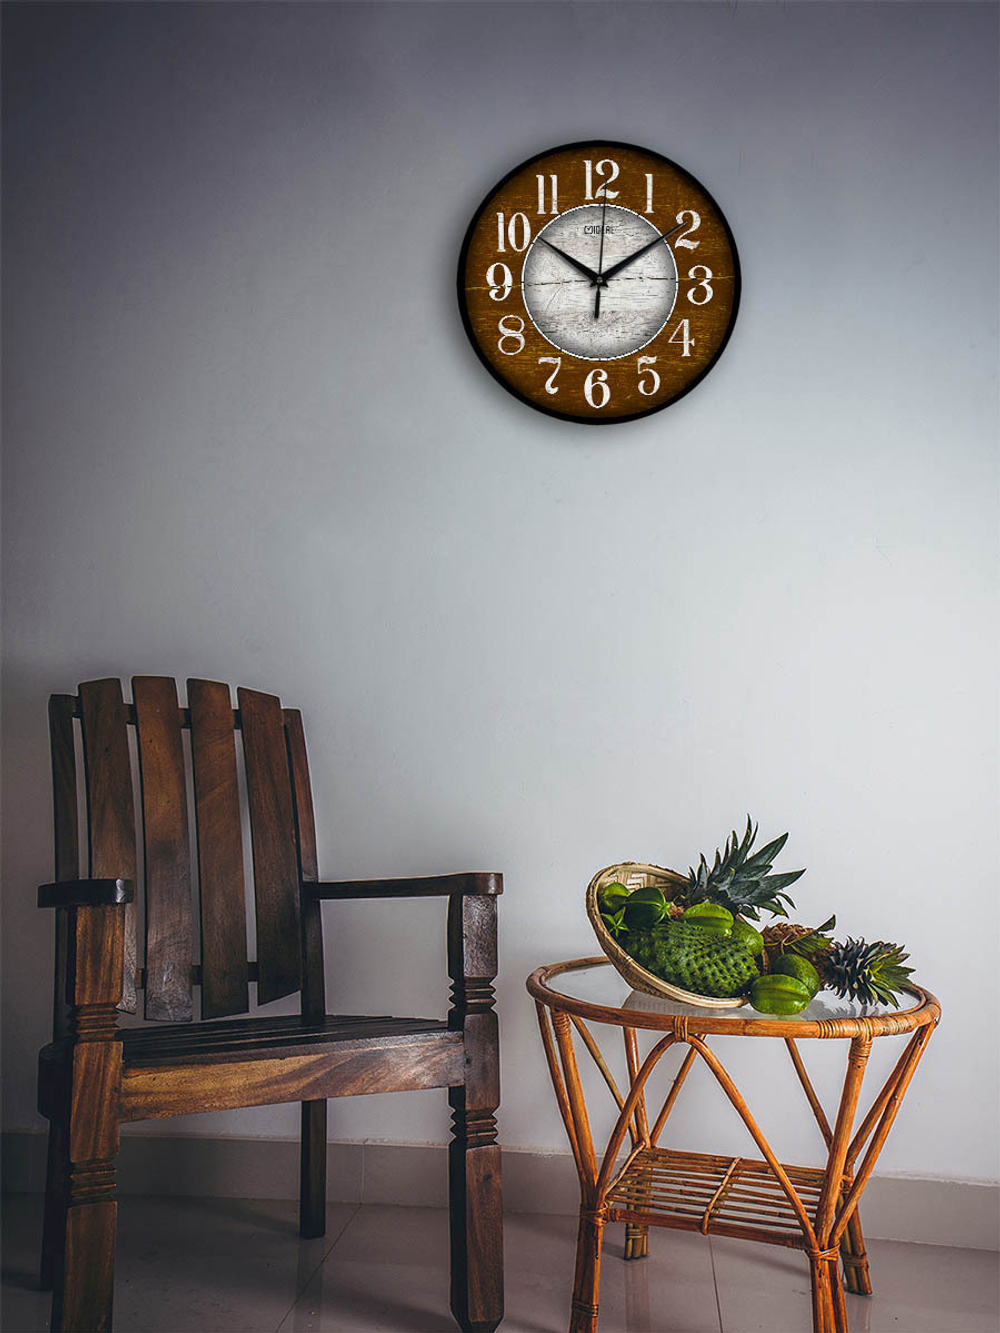 Часы настенные деревянные Ideal "Марсель", 30 см (коричневый)